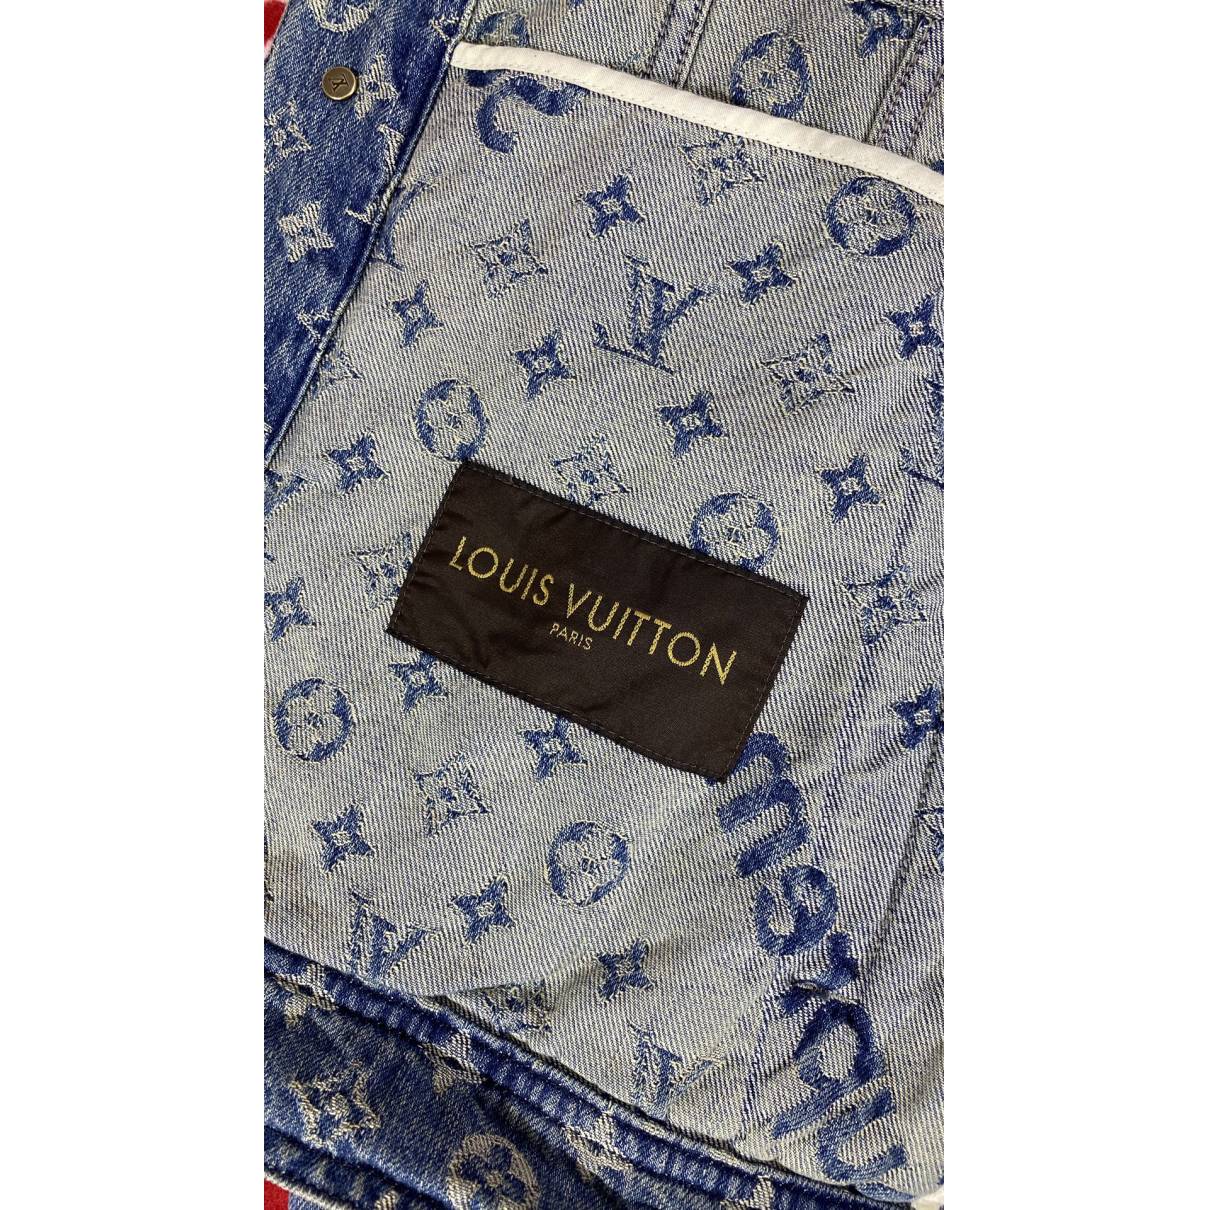 Louis Vuitton x Supreme Jackets for Men - Vestiaire Collective